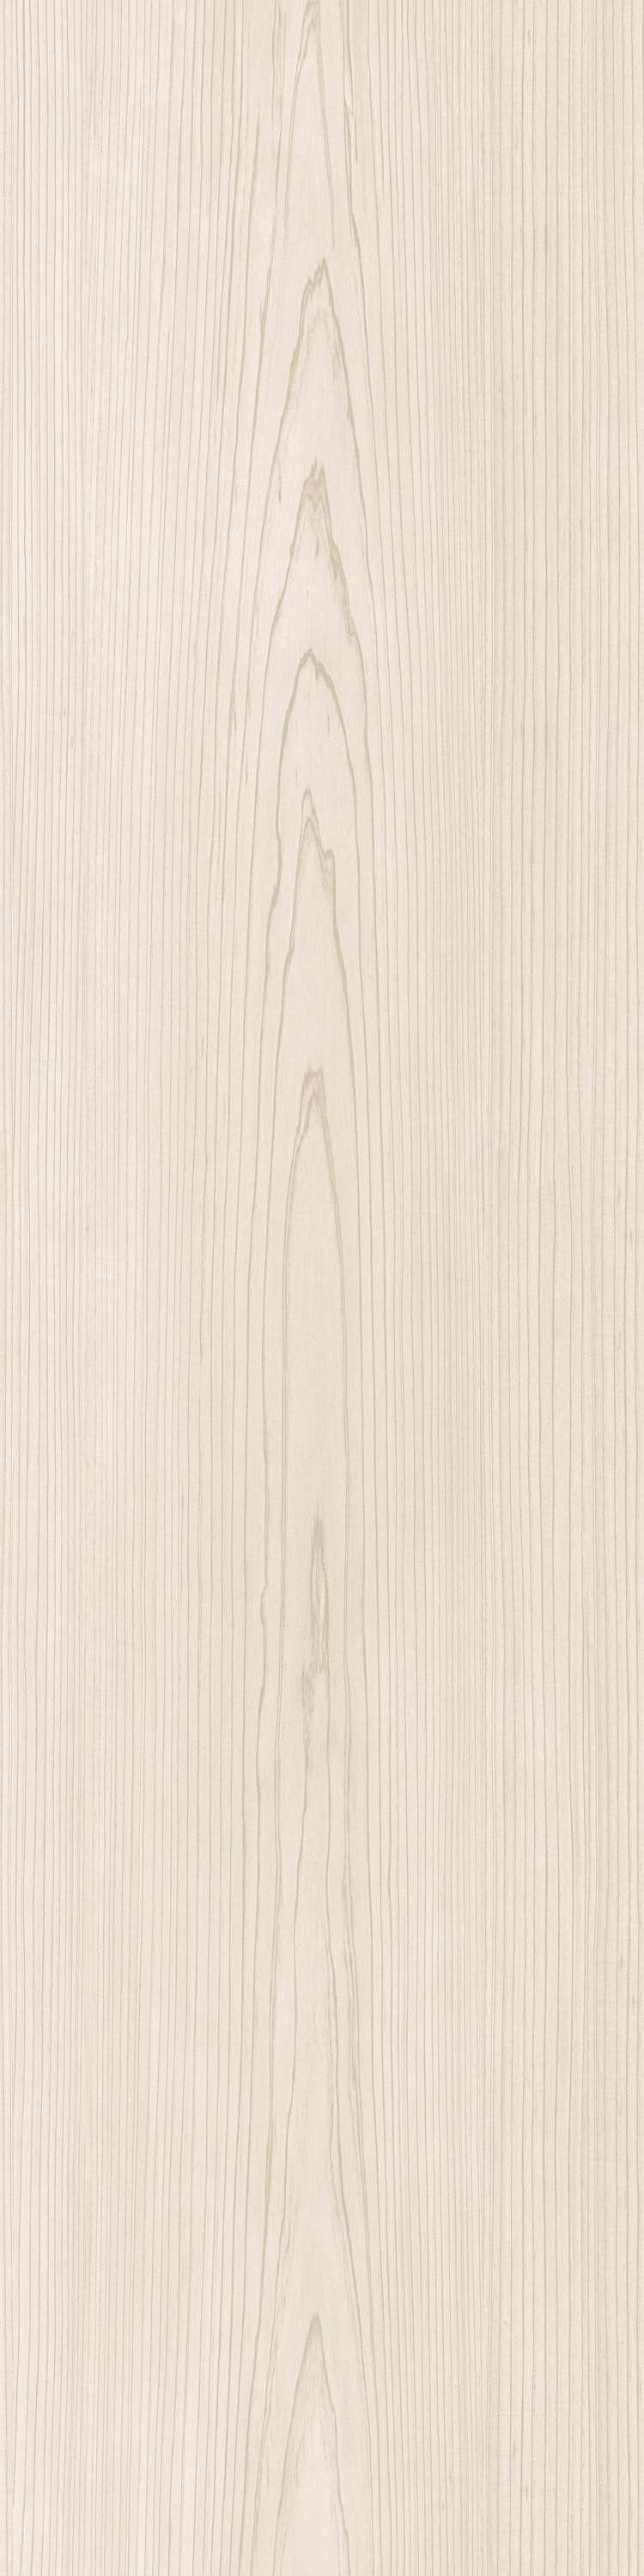 A026-02-000 Chiffon Oak